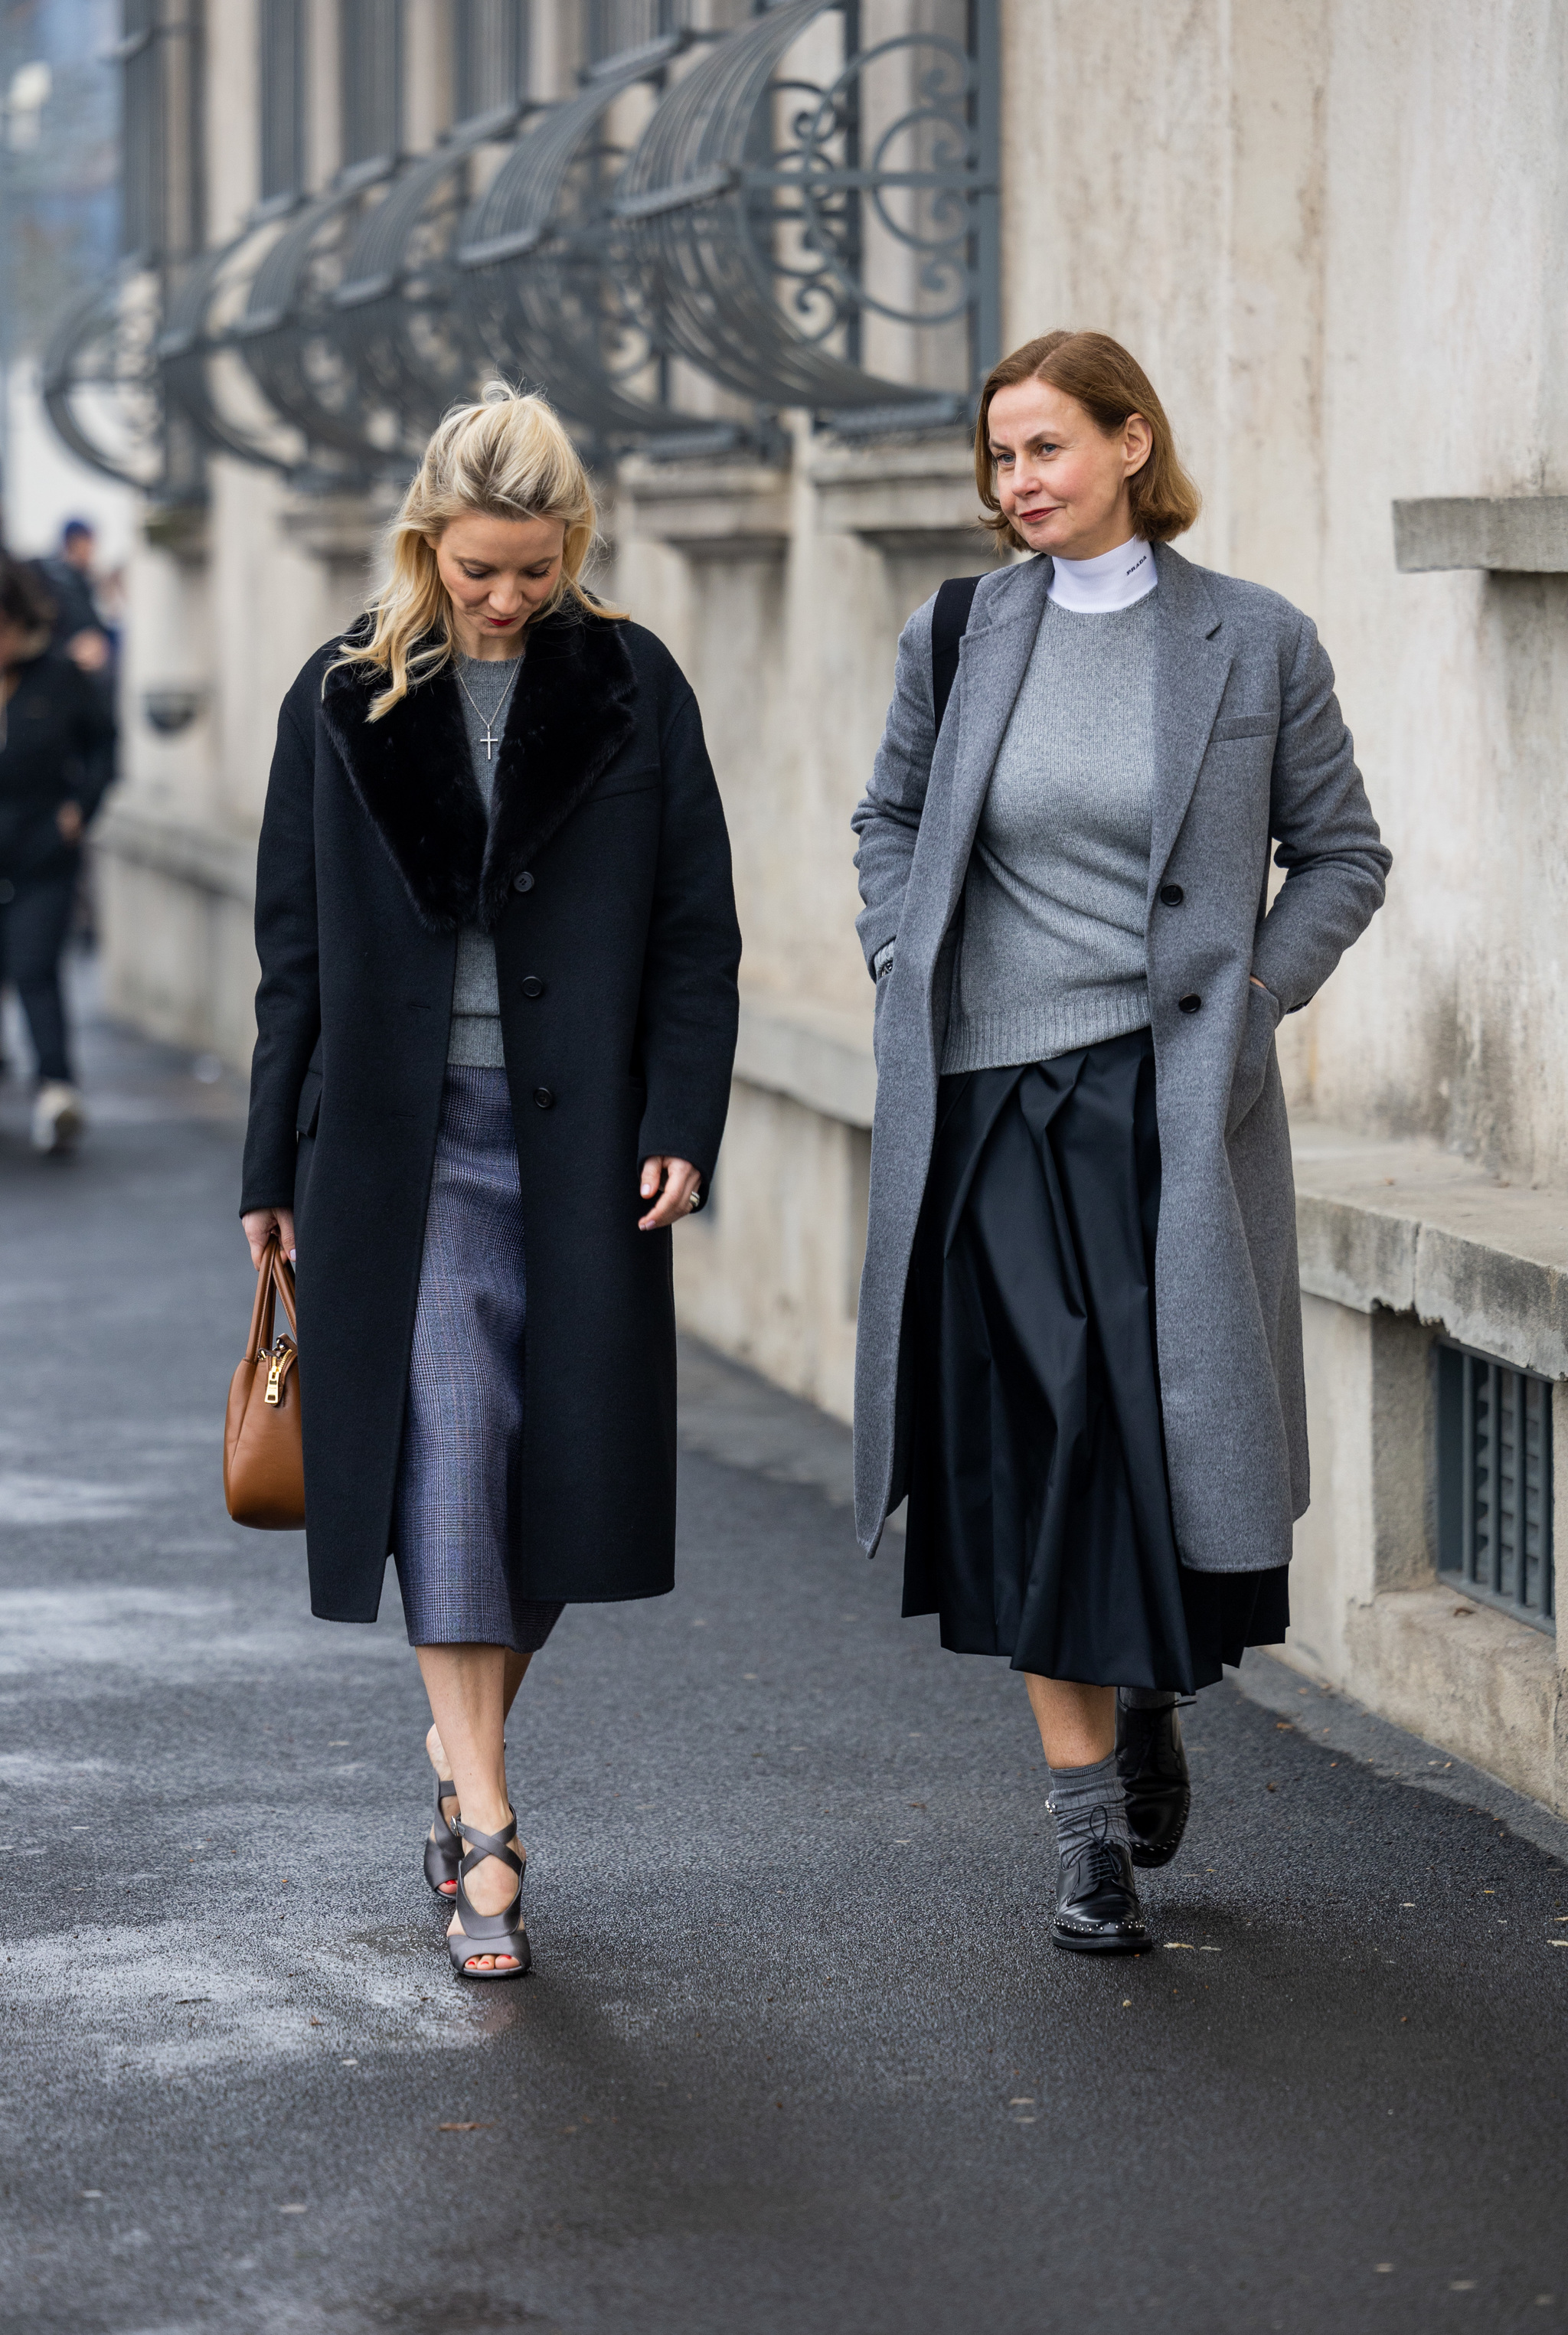 Las expertas en moda eligen siempre los abrigos de corte clásico.